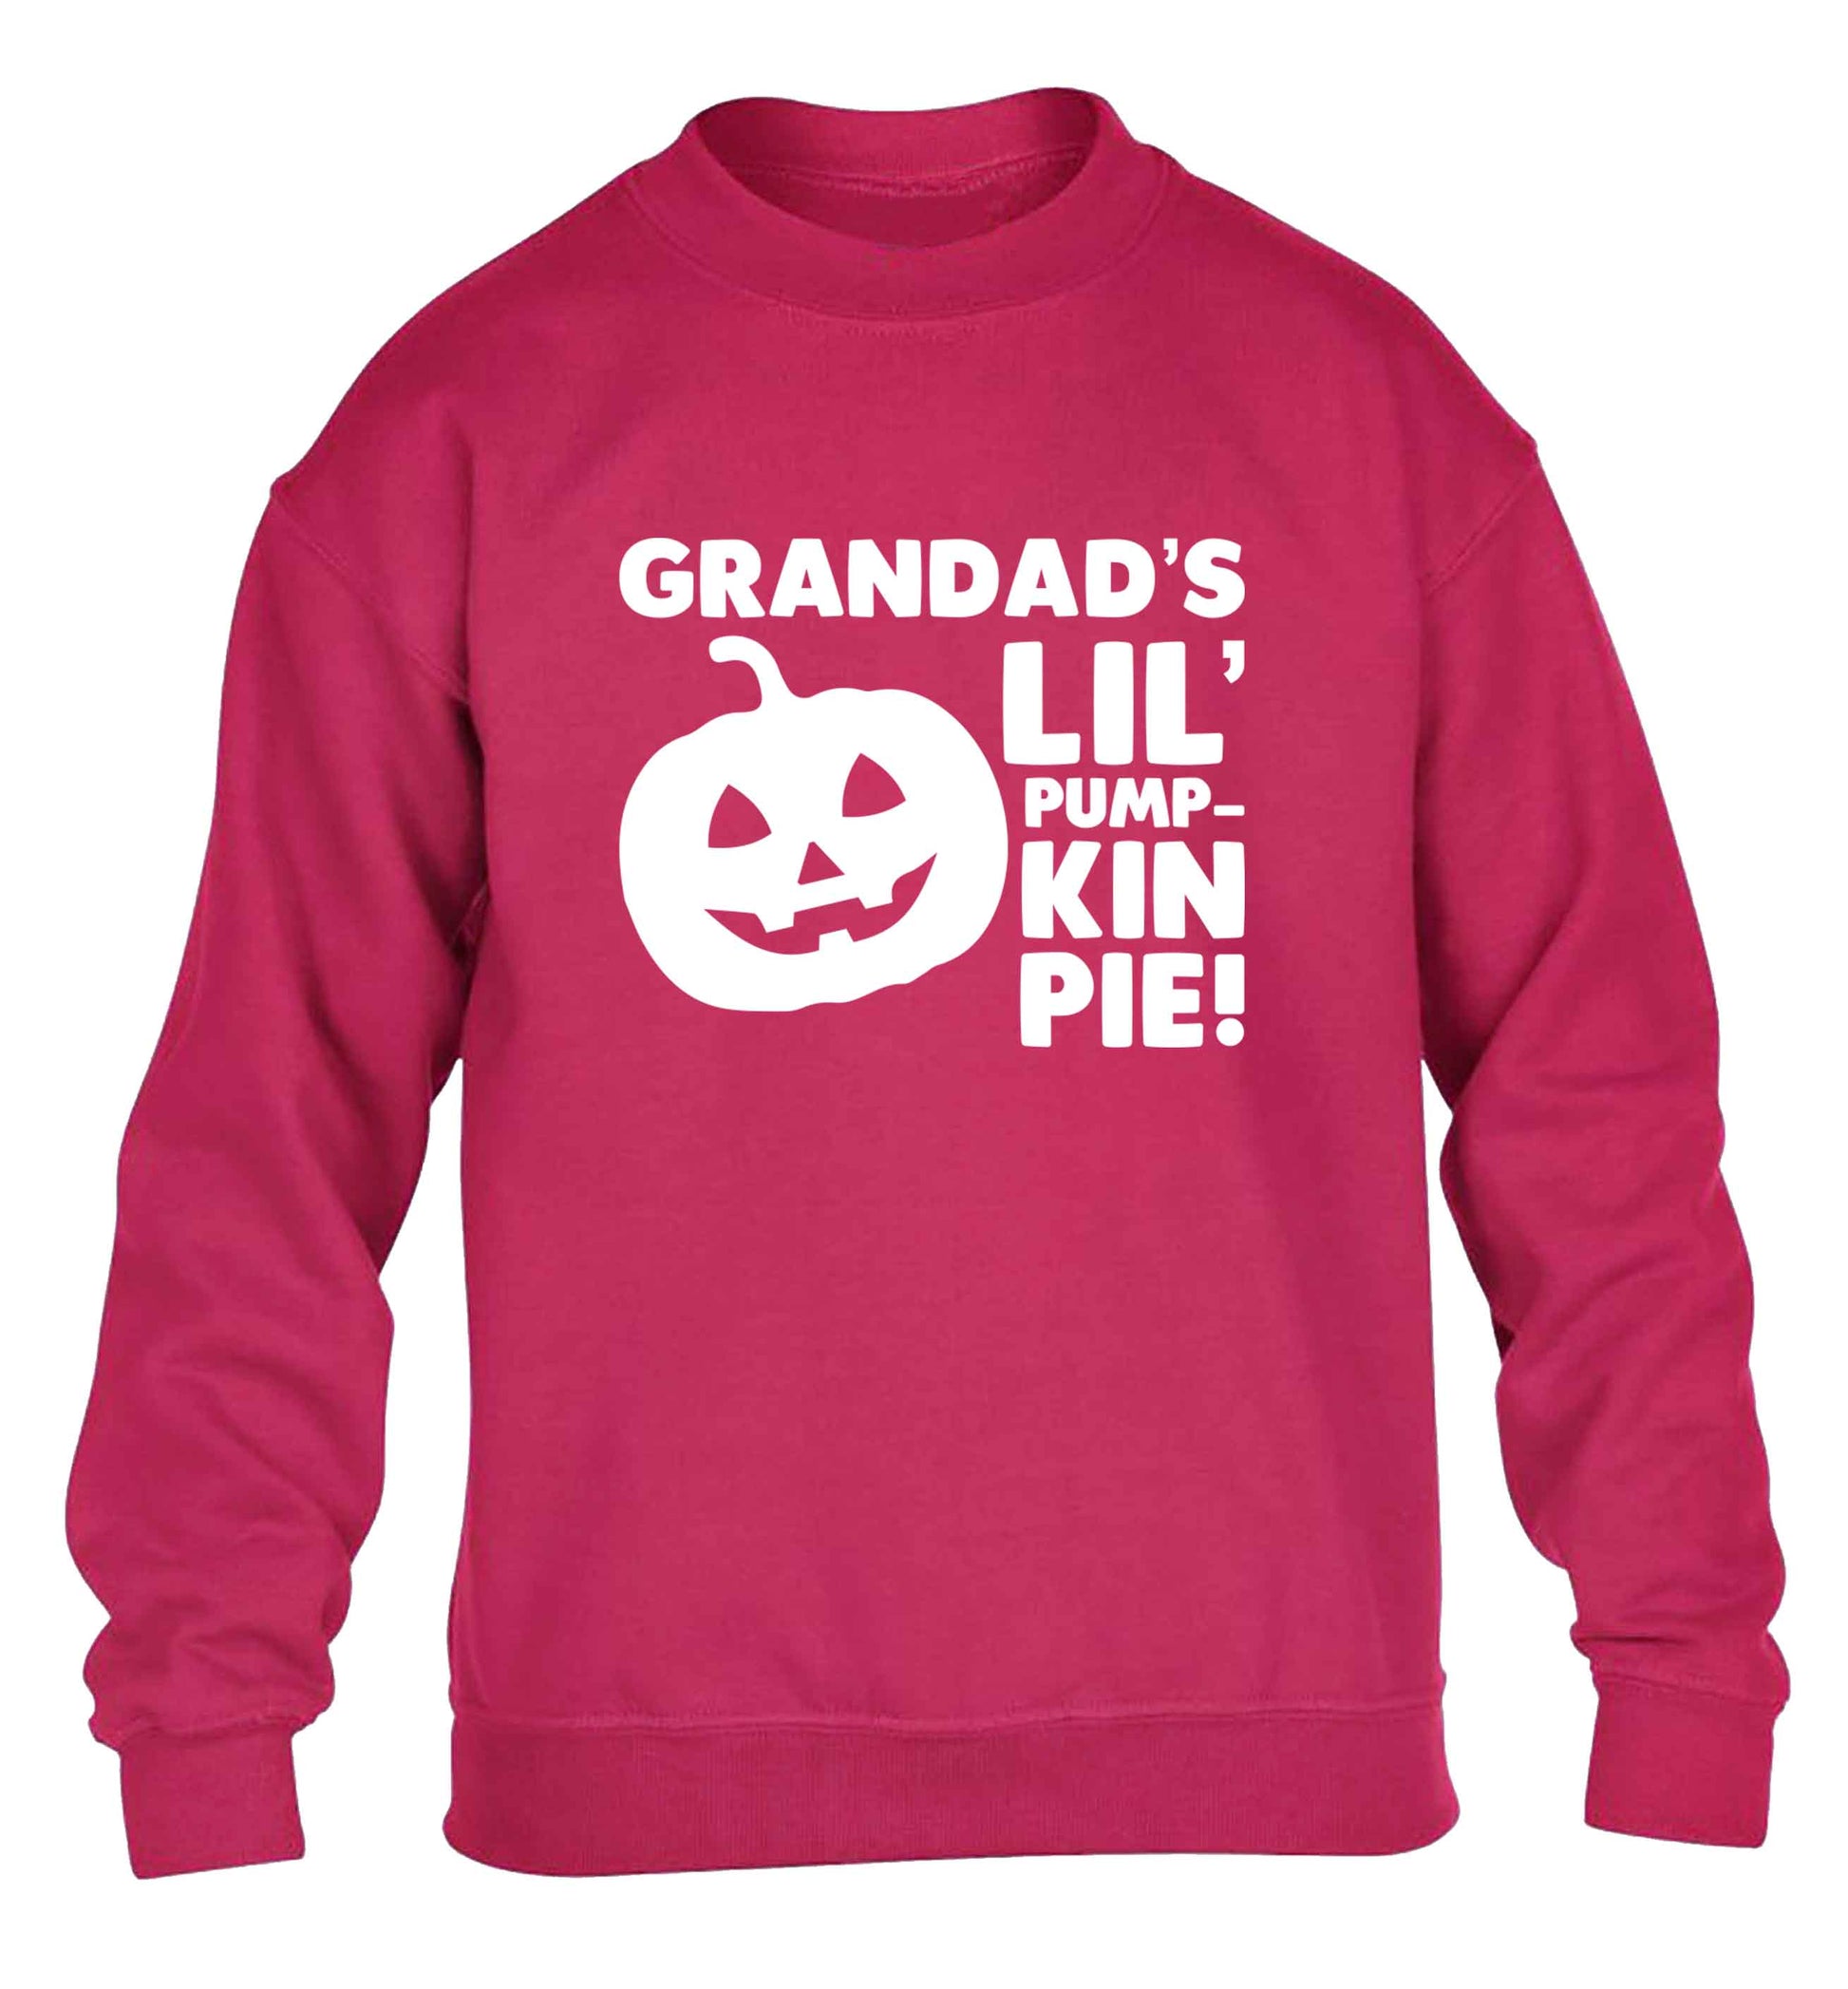 Grandad's lil' pumpkin pie children's pink sweater 12-13 Years